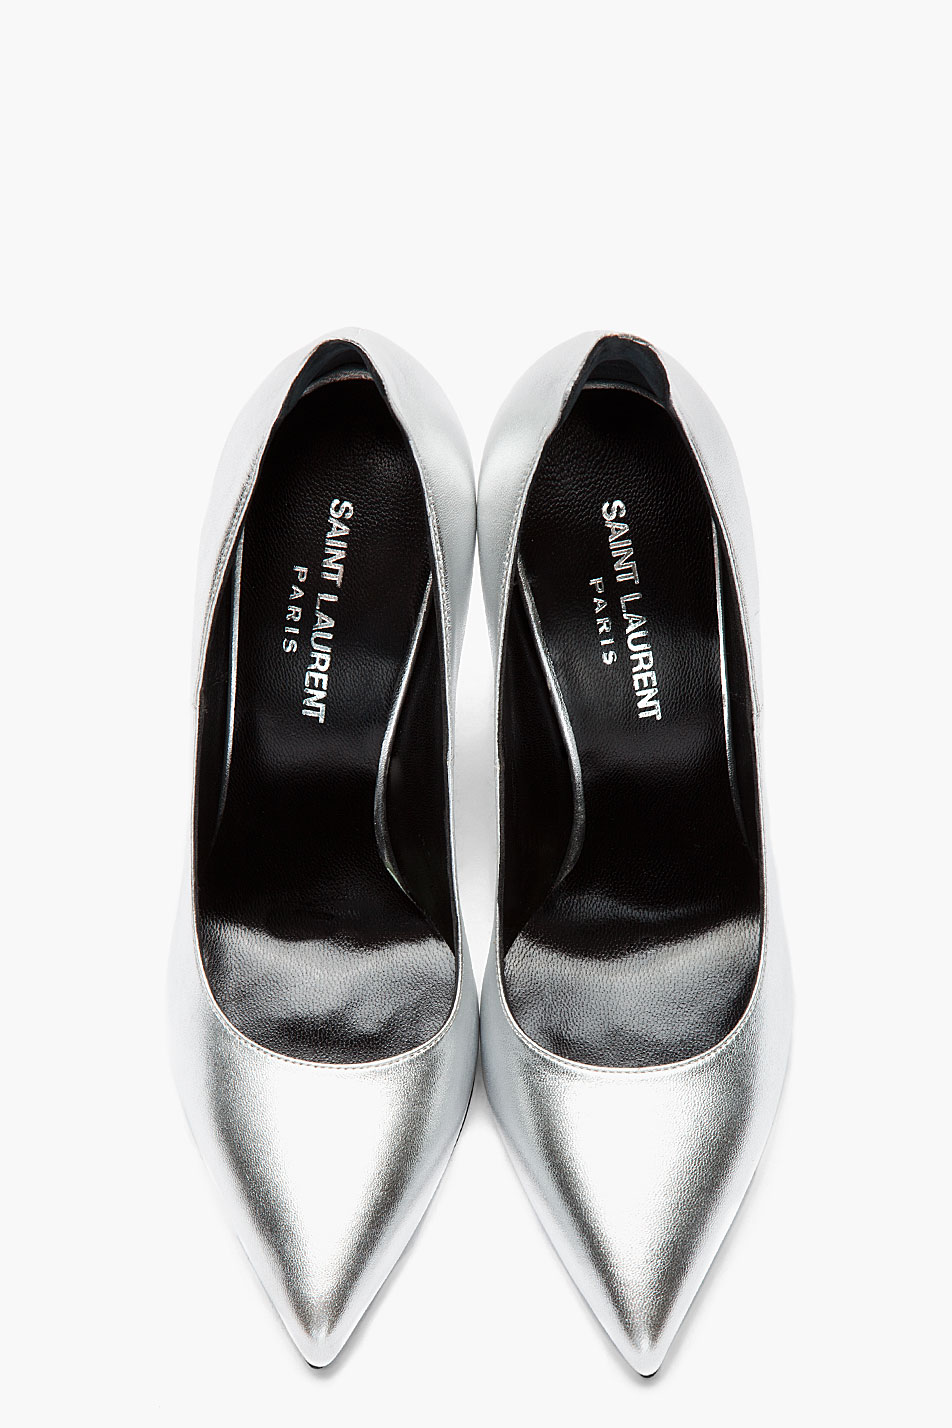 Fusion Of Effects: Trendology: Saint Laurent Silver Heel Tab Paris Pumps